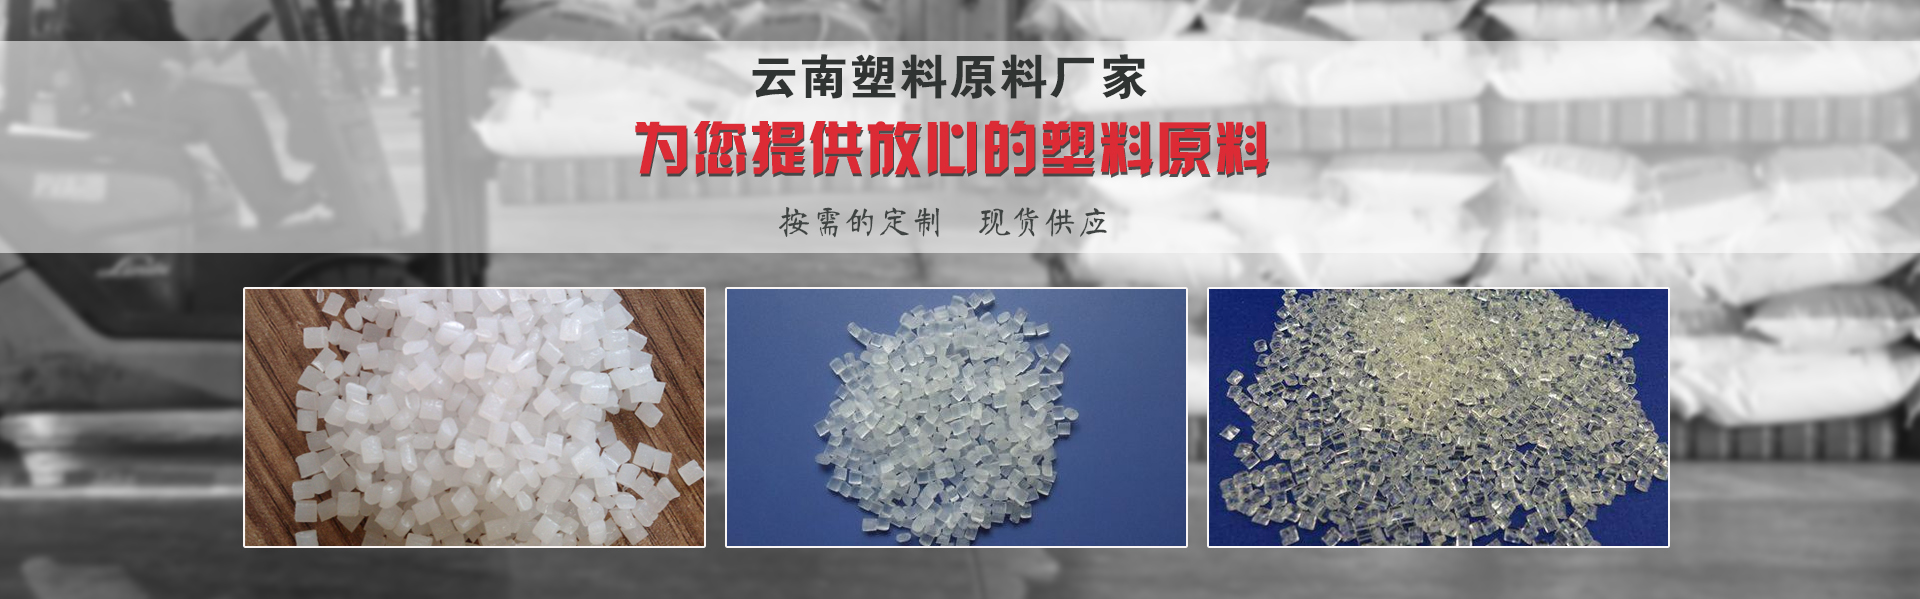 云南塑料原料厂家说:这四种方法可以鉴别塑料的质量